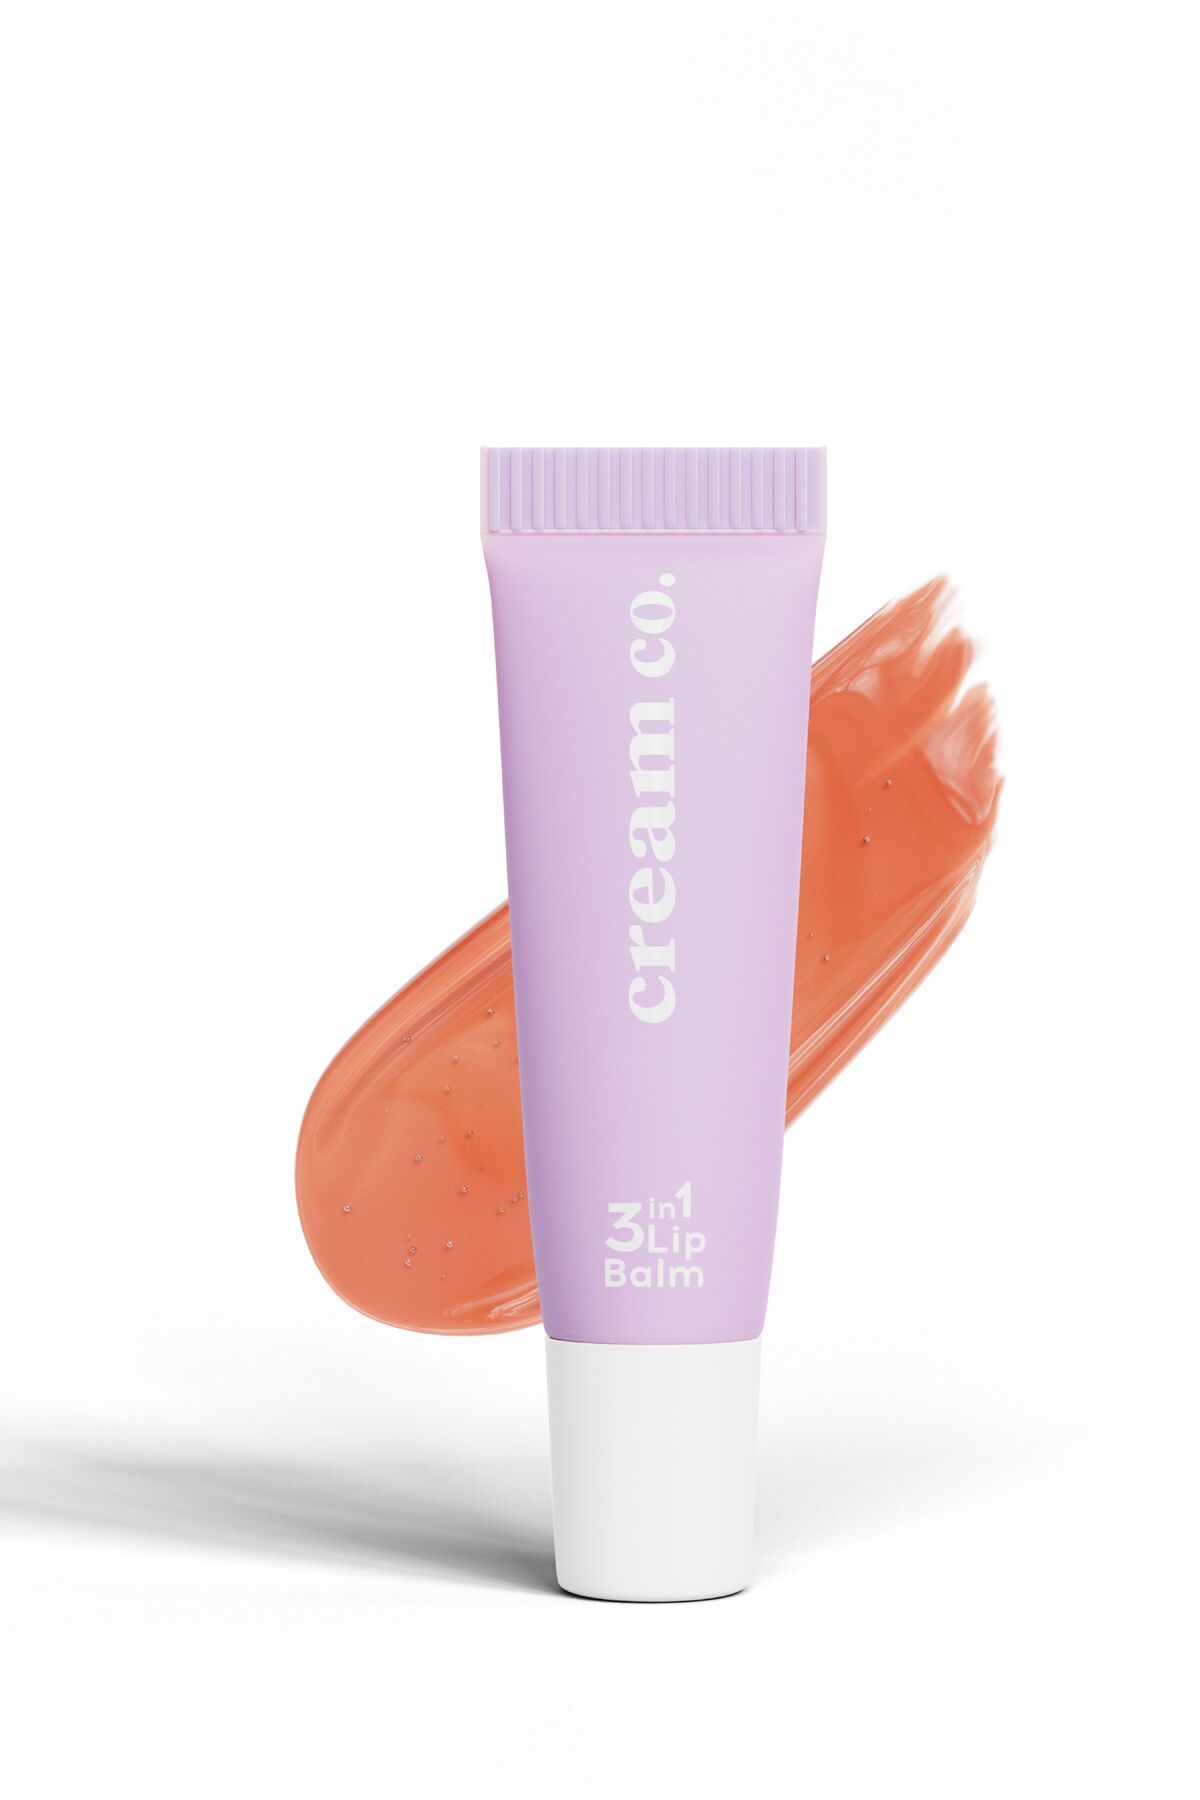 Cream Co. Onarıcı Besleyici Dudak Bakım Parlatıcı Nemlendirici Bej Renkli Kurabiye Aromalı 3in1 Lip Balm 403 CC403